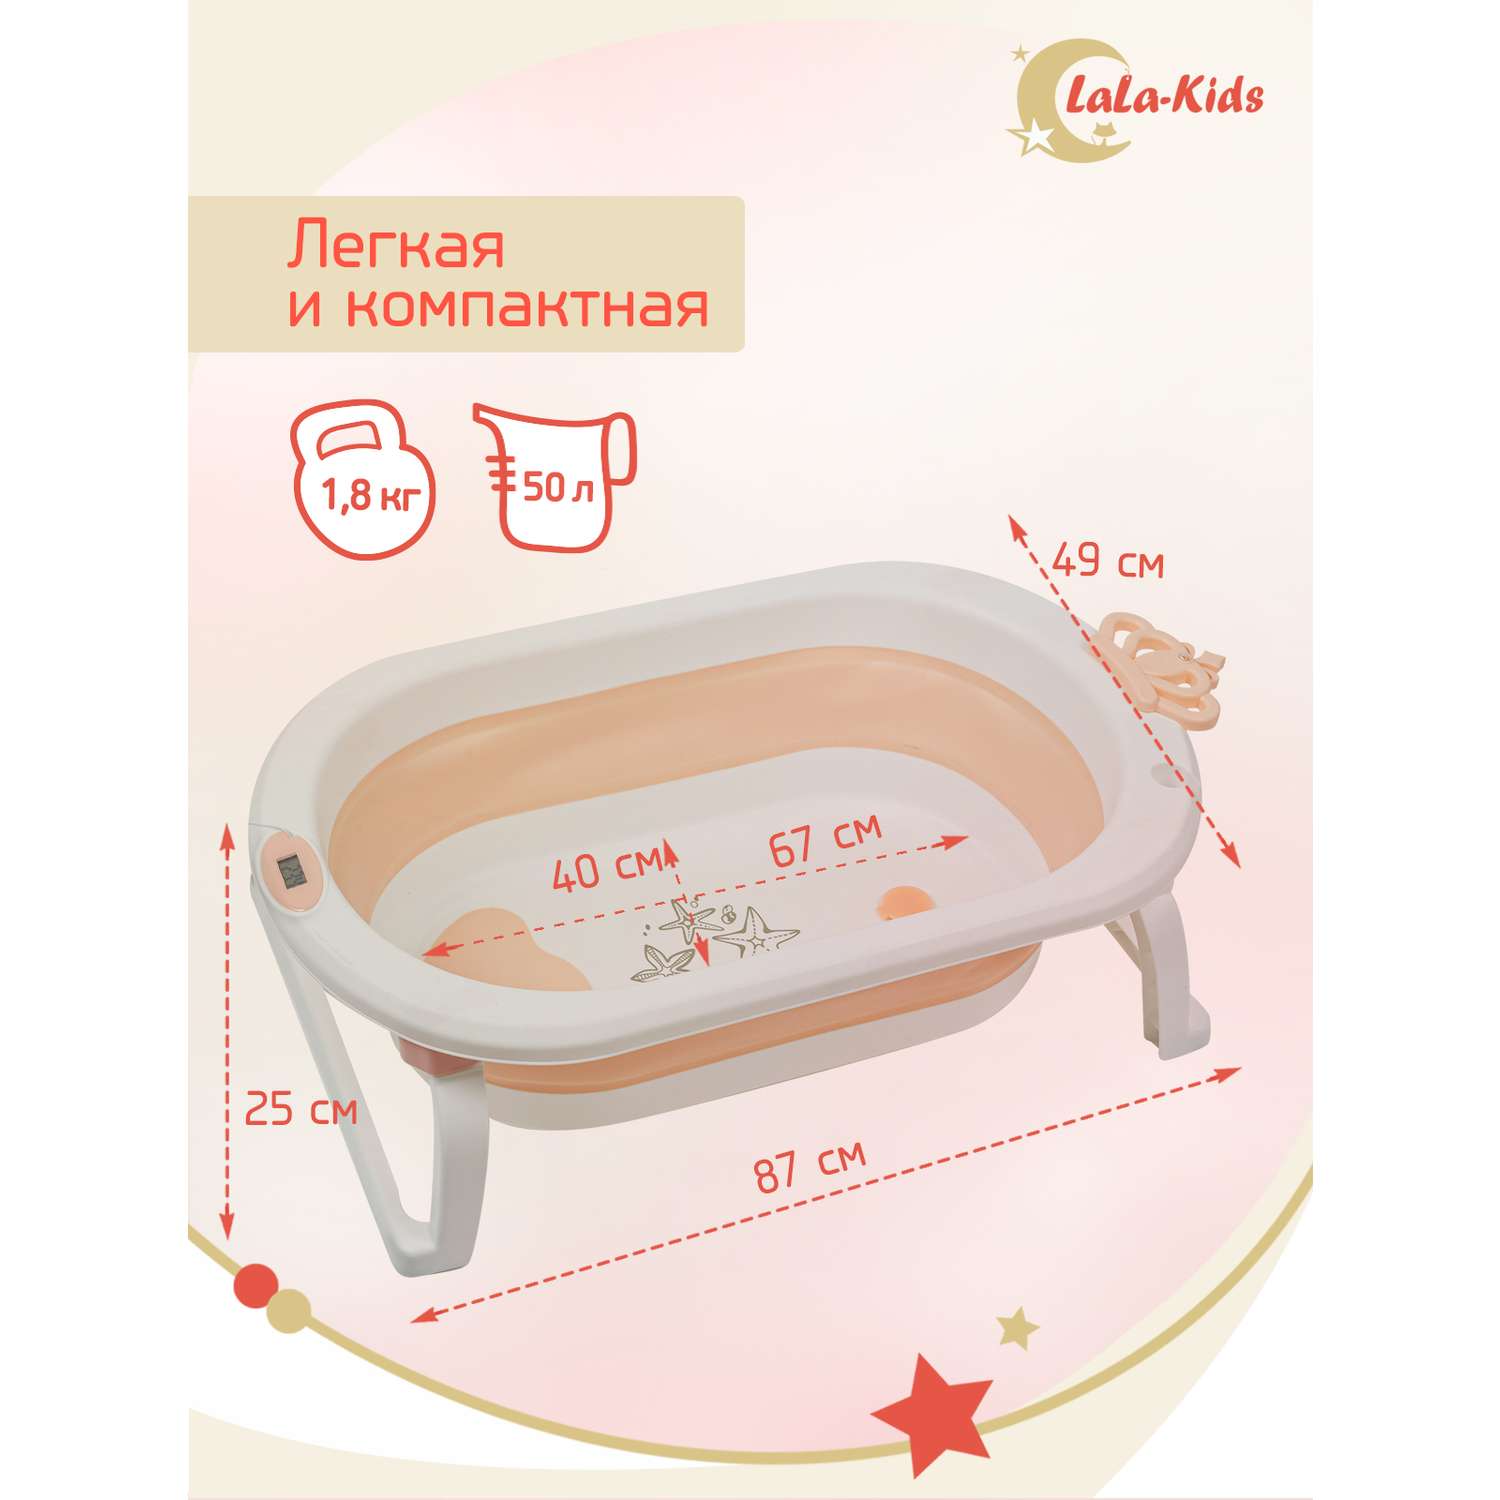 Детская ванночка с термометром LaLa-Kids складная для купания новорожденных с термометром и матрасиком в комплекте - фото 7